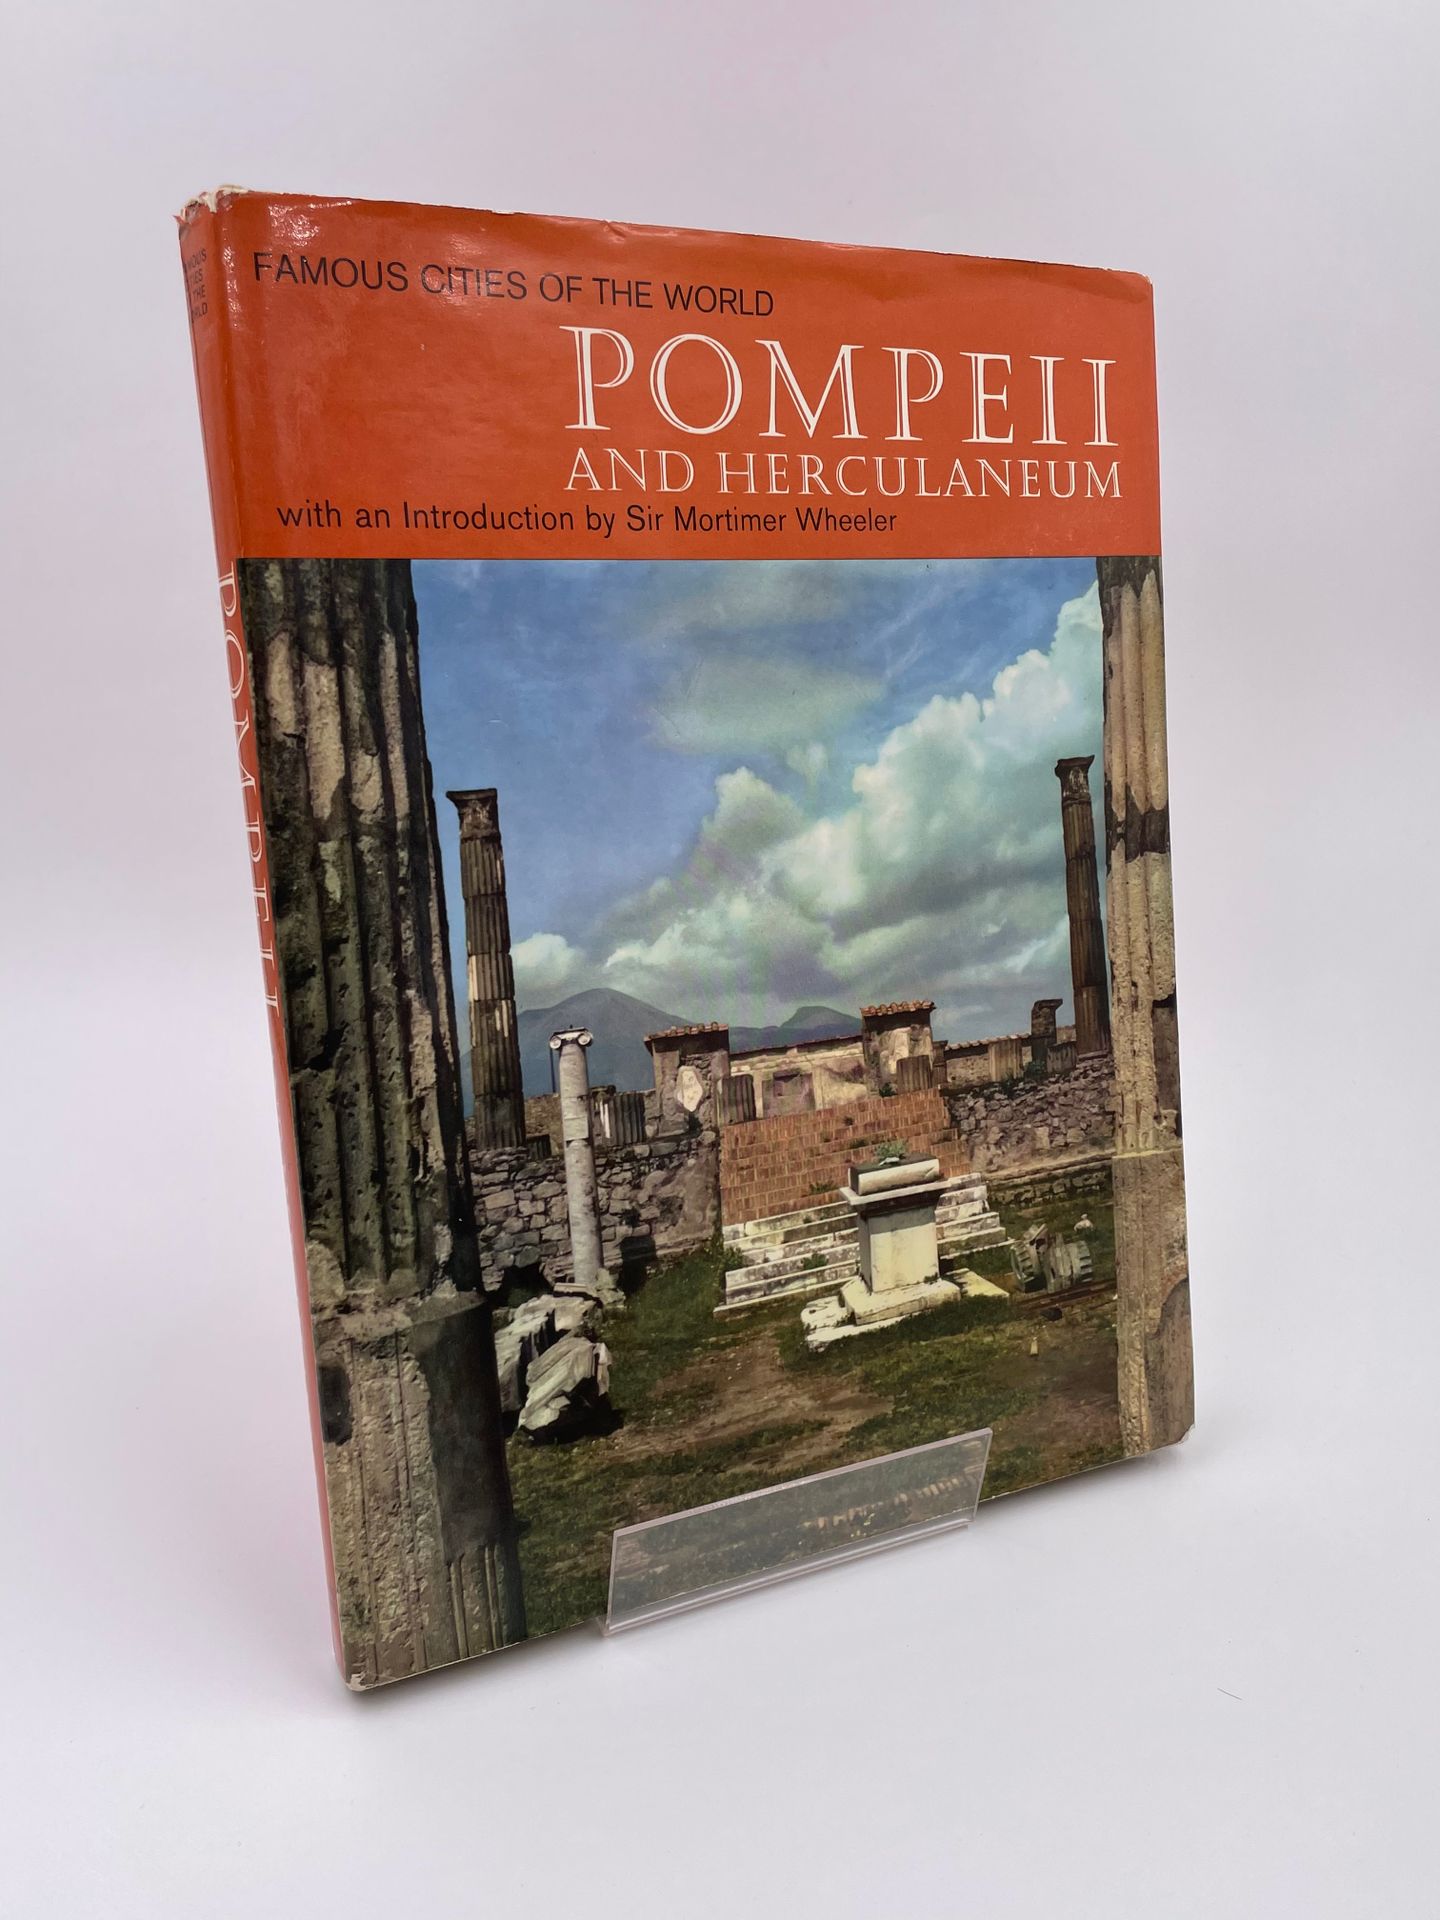 Null 1 Band: "Pompei und Herculaneum", Fotografien von Jan Likas, Einführung von&hellip;